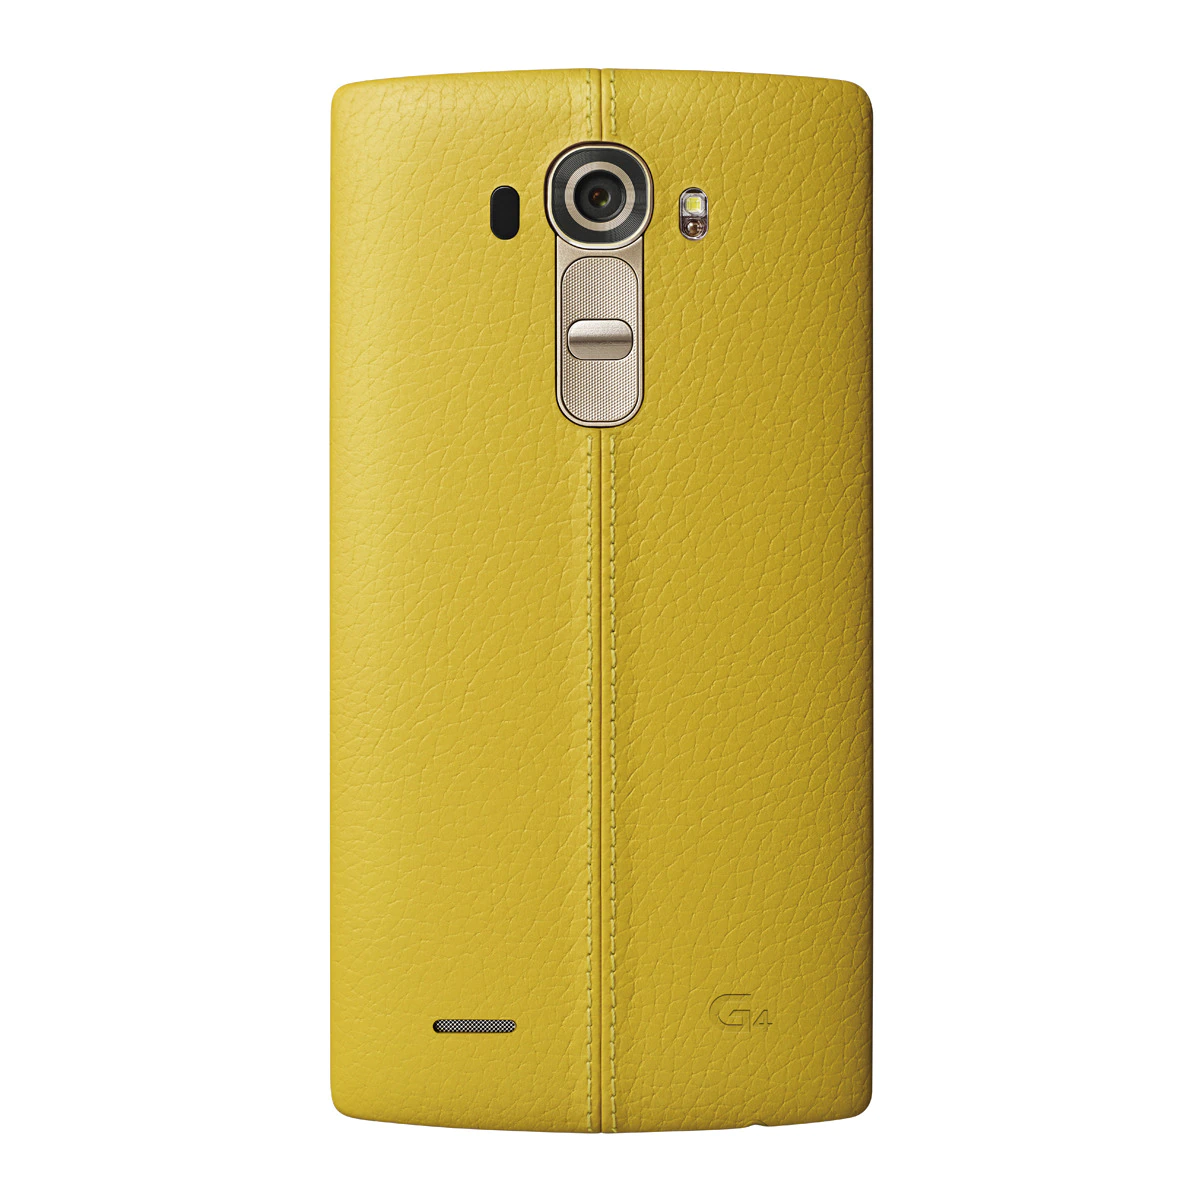 Carcasa LG CPR110 para LG G4 Amarillo